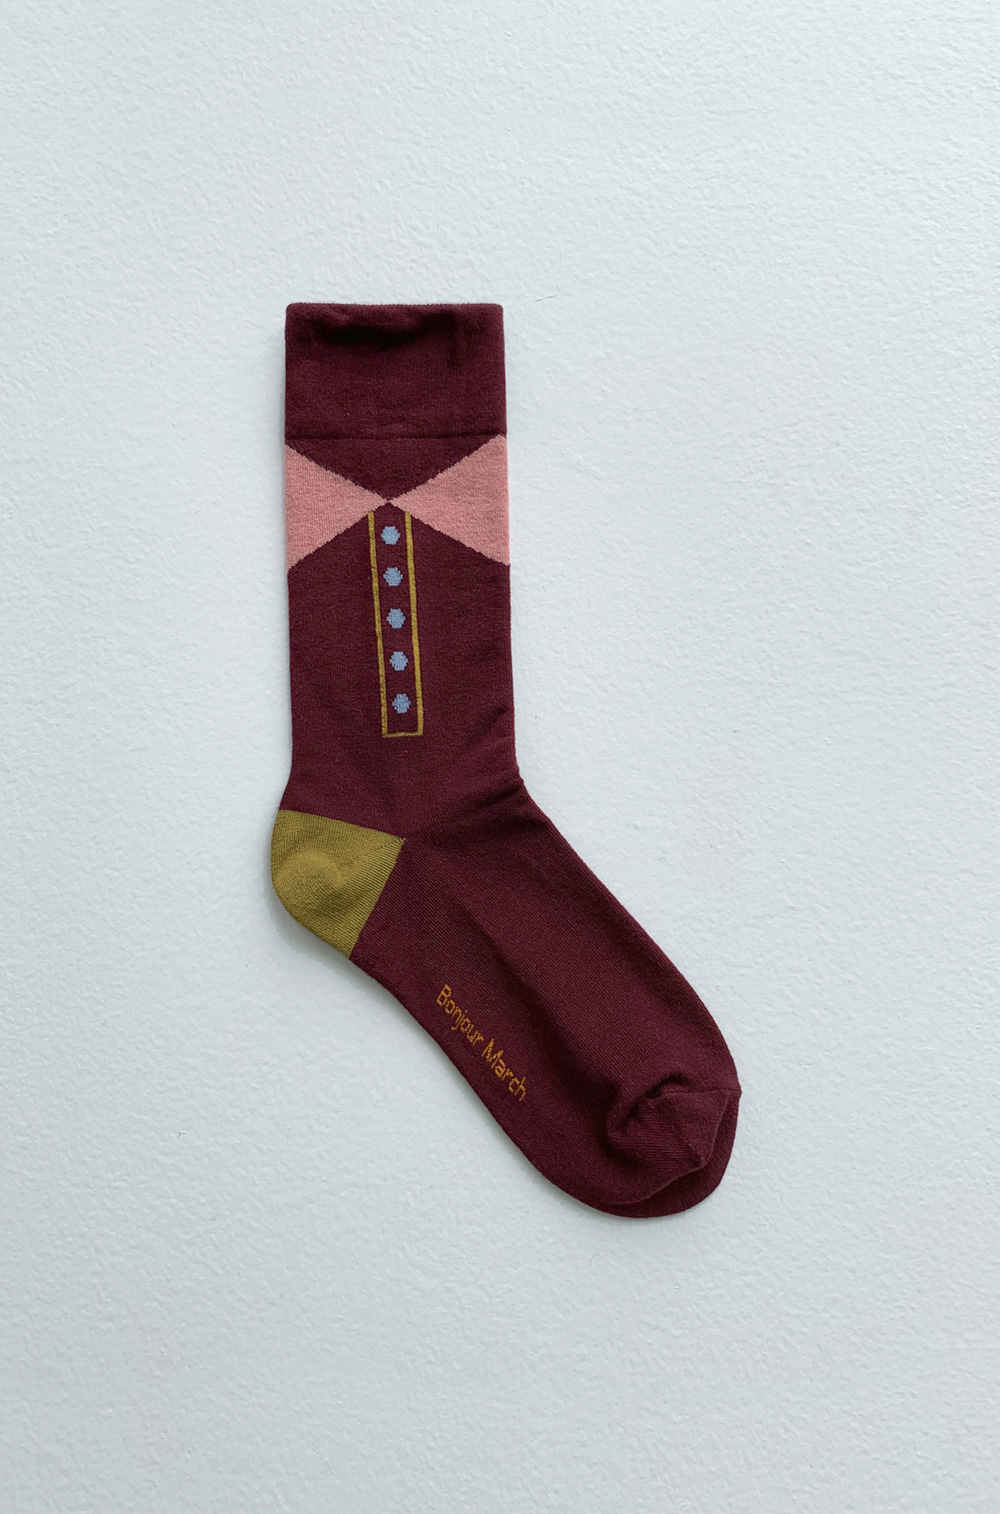 Ribbon button socks